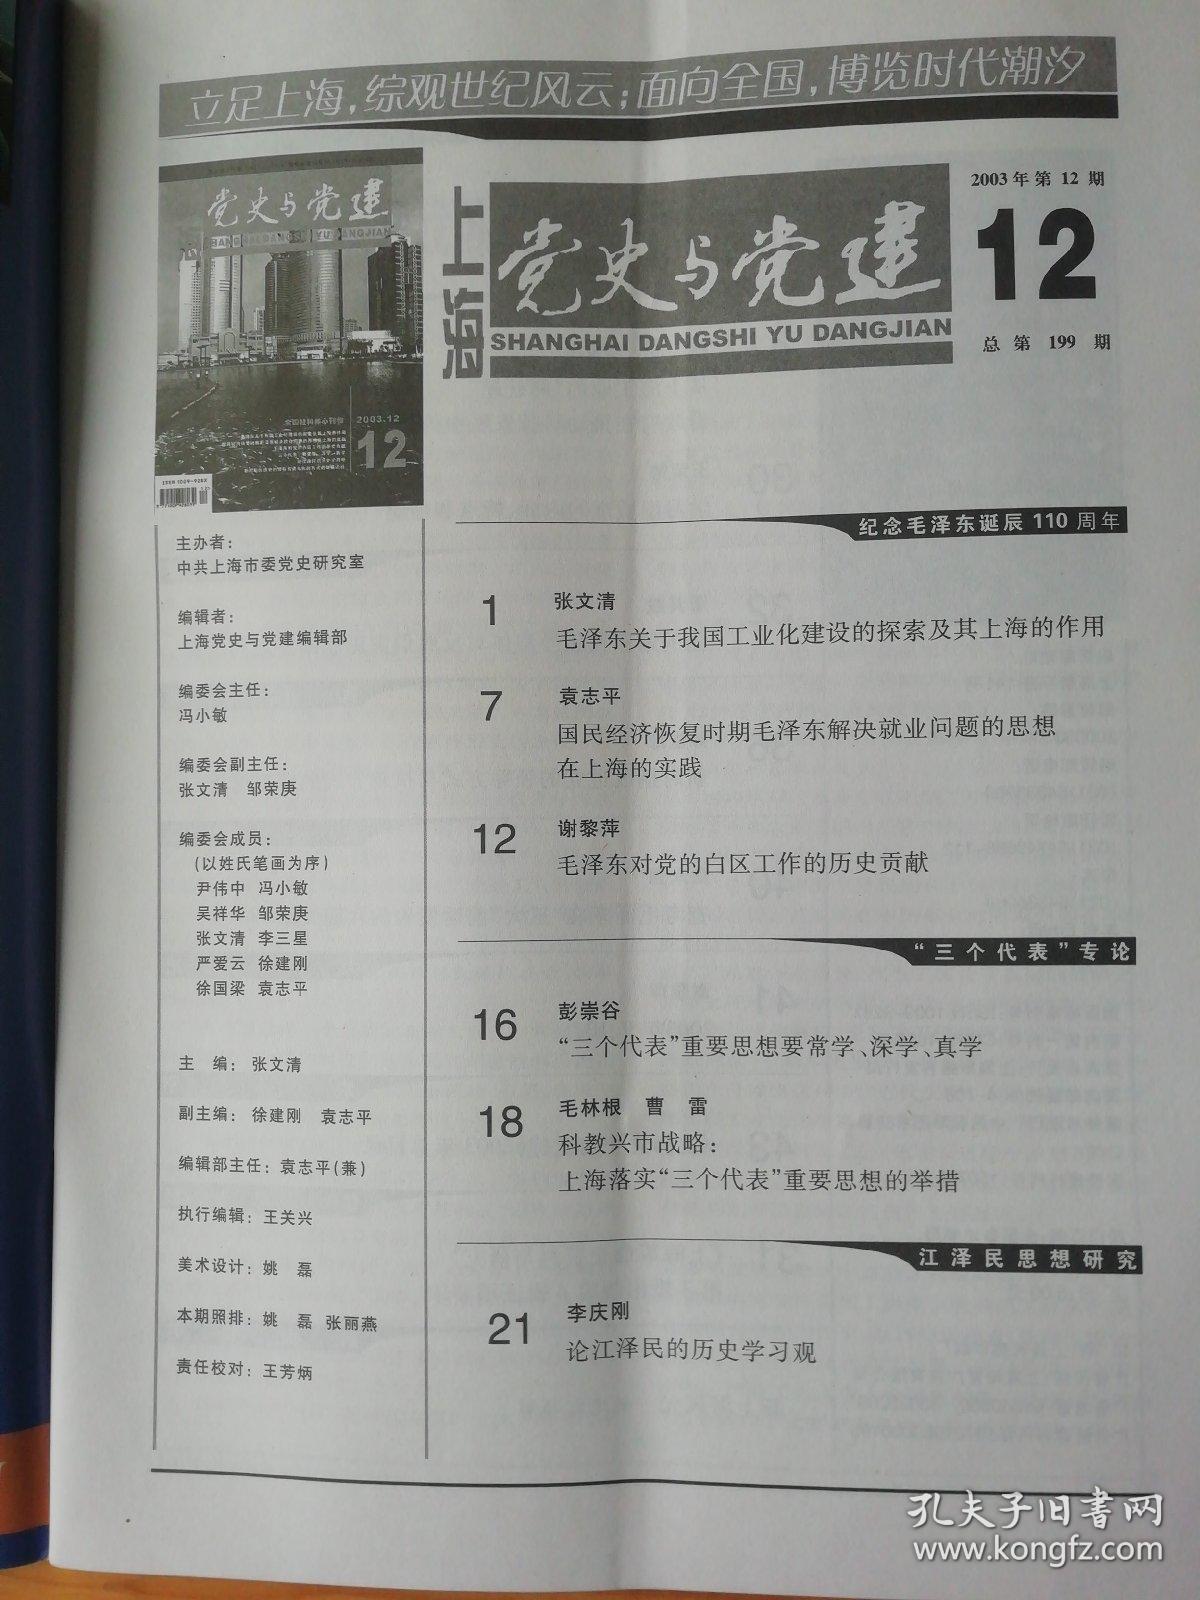 上海党史与党建2003年第12期..